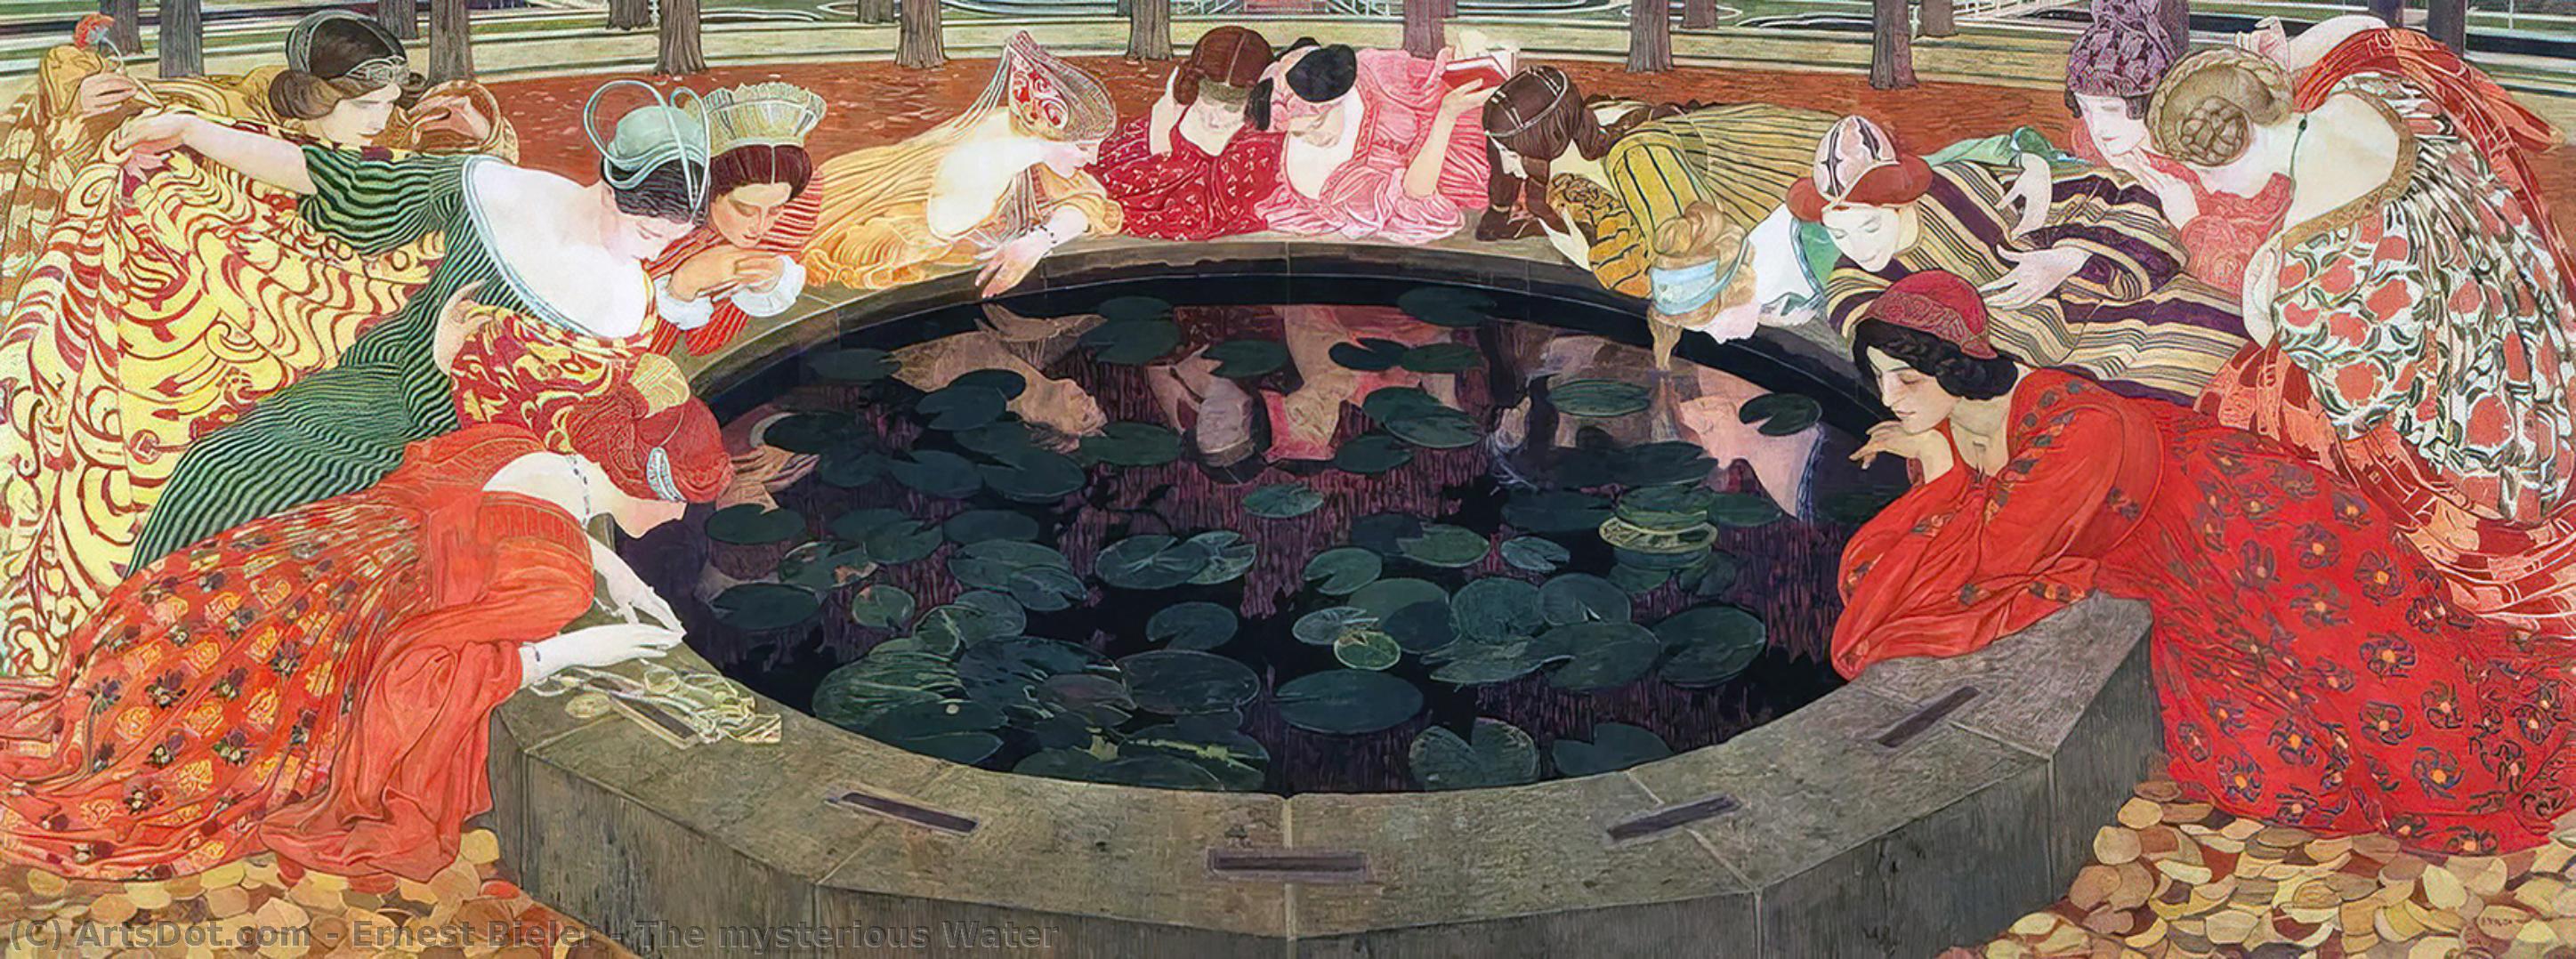 WikiOO.org - Εγκυκλοπαίδεια Καλών Τεχνών - Ζωγραφική, έργα τέχνης Ernest Bieler - The mysterious Water